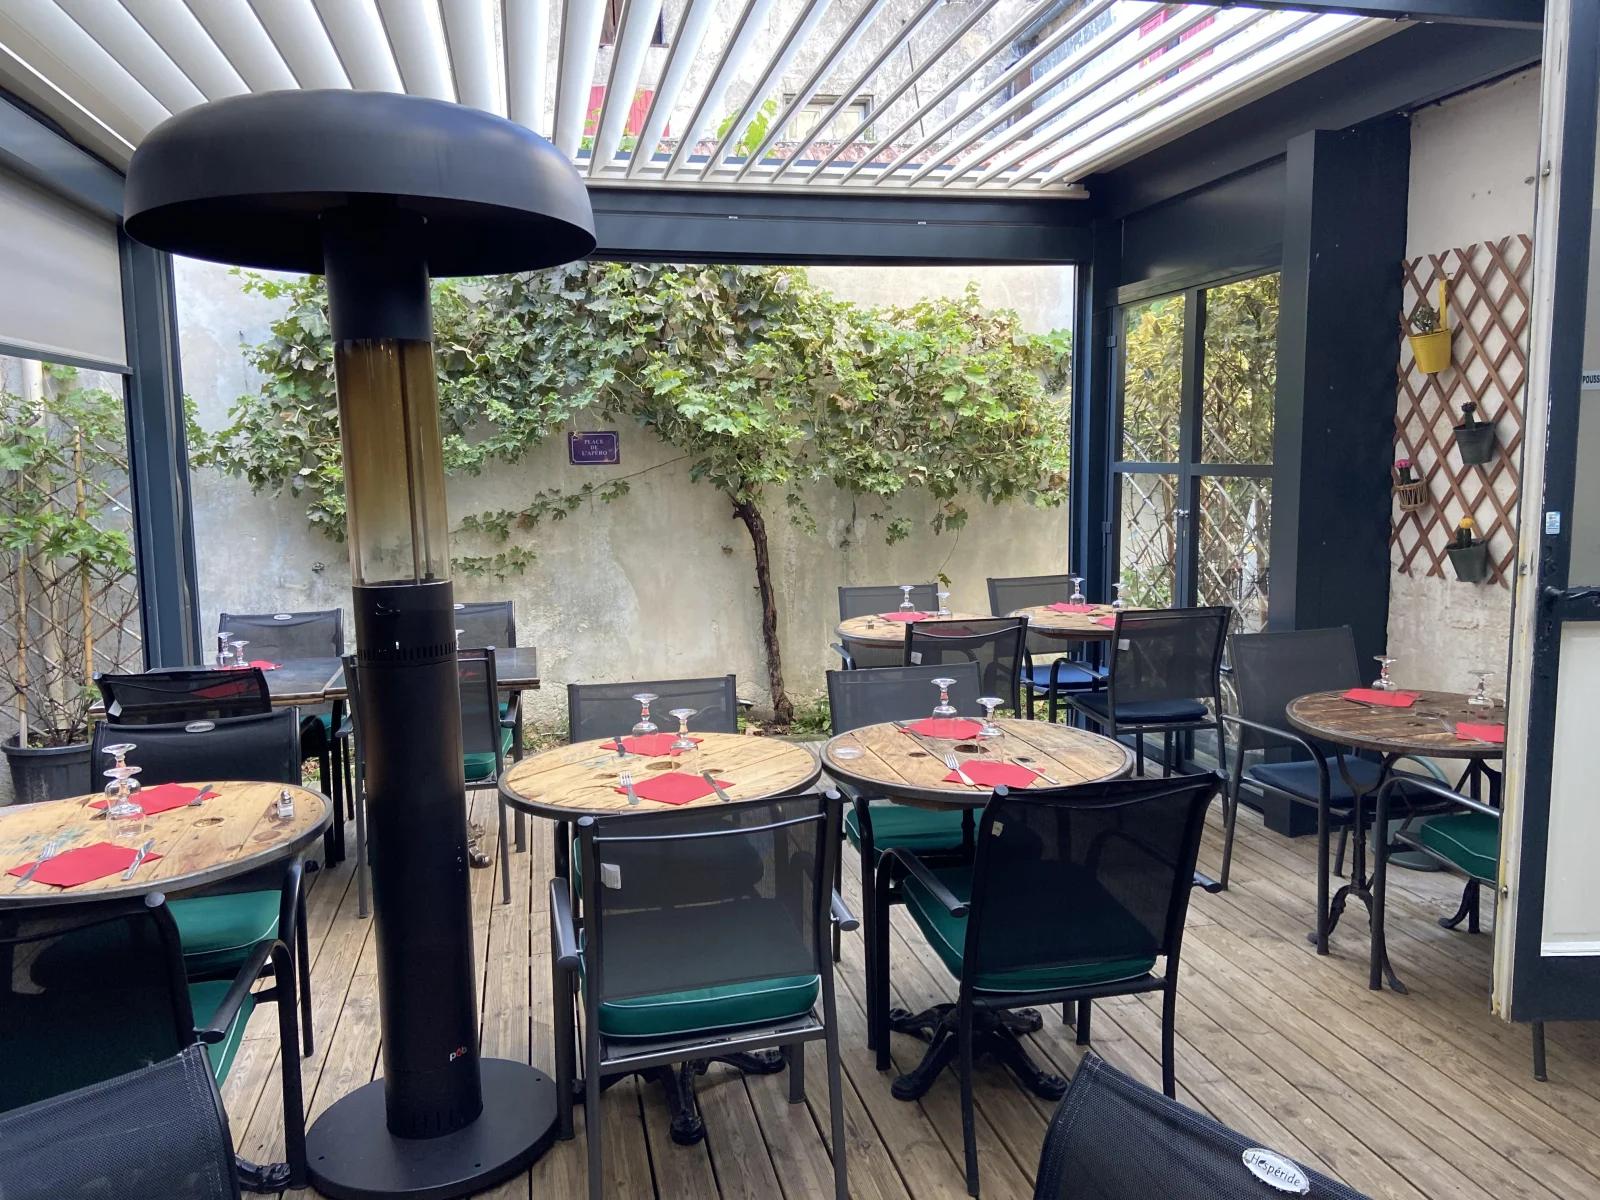 Comedor dentro Restaurante y bar de vinos con terraza - 1